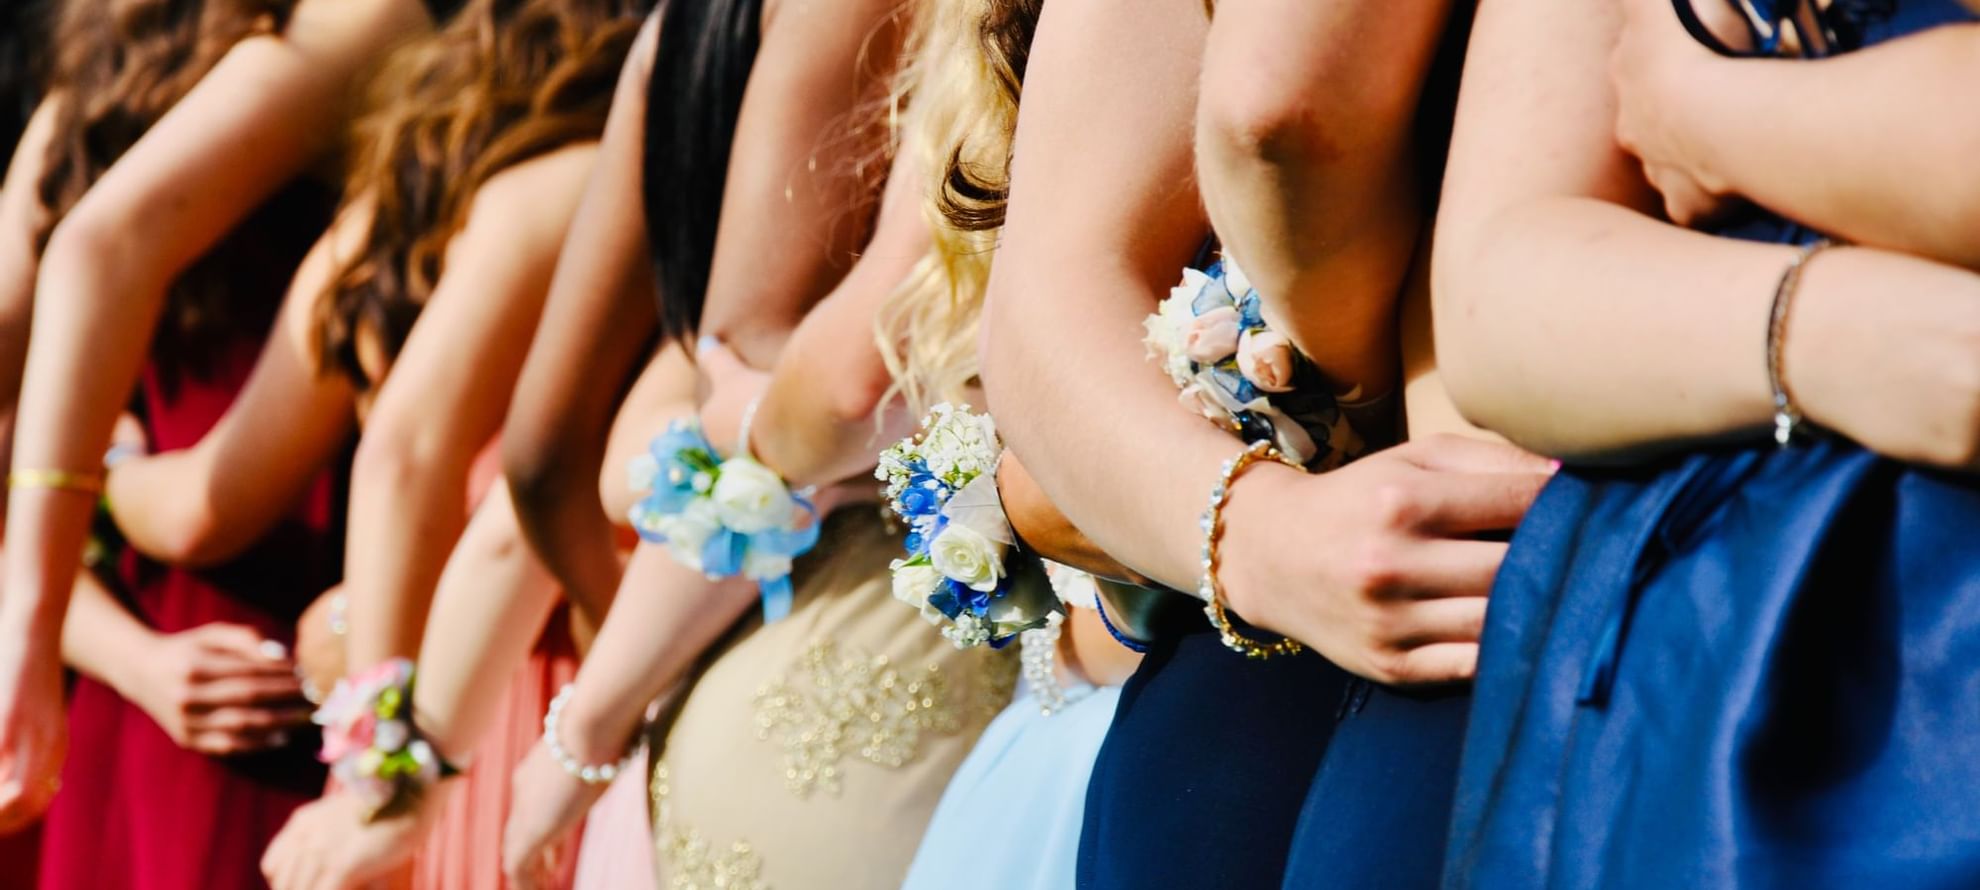 A group of girls in elegant wedding dresses posing together at Fullerton Sydney